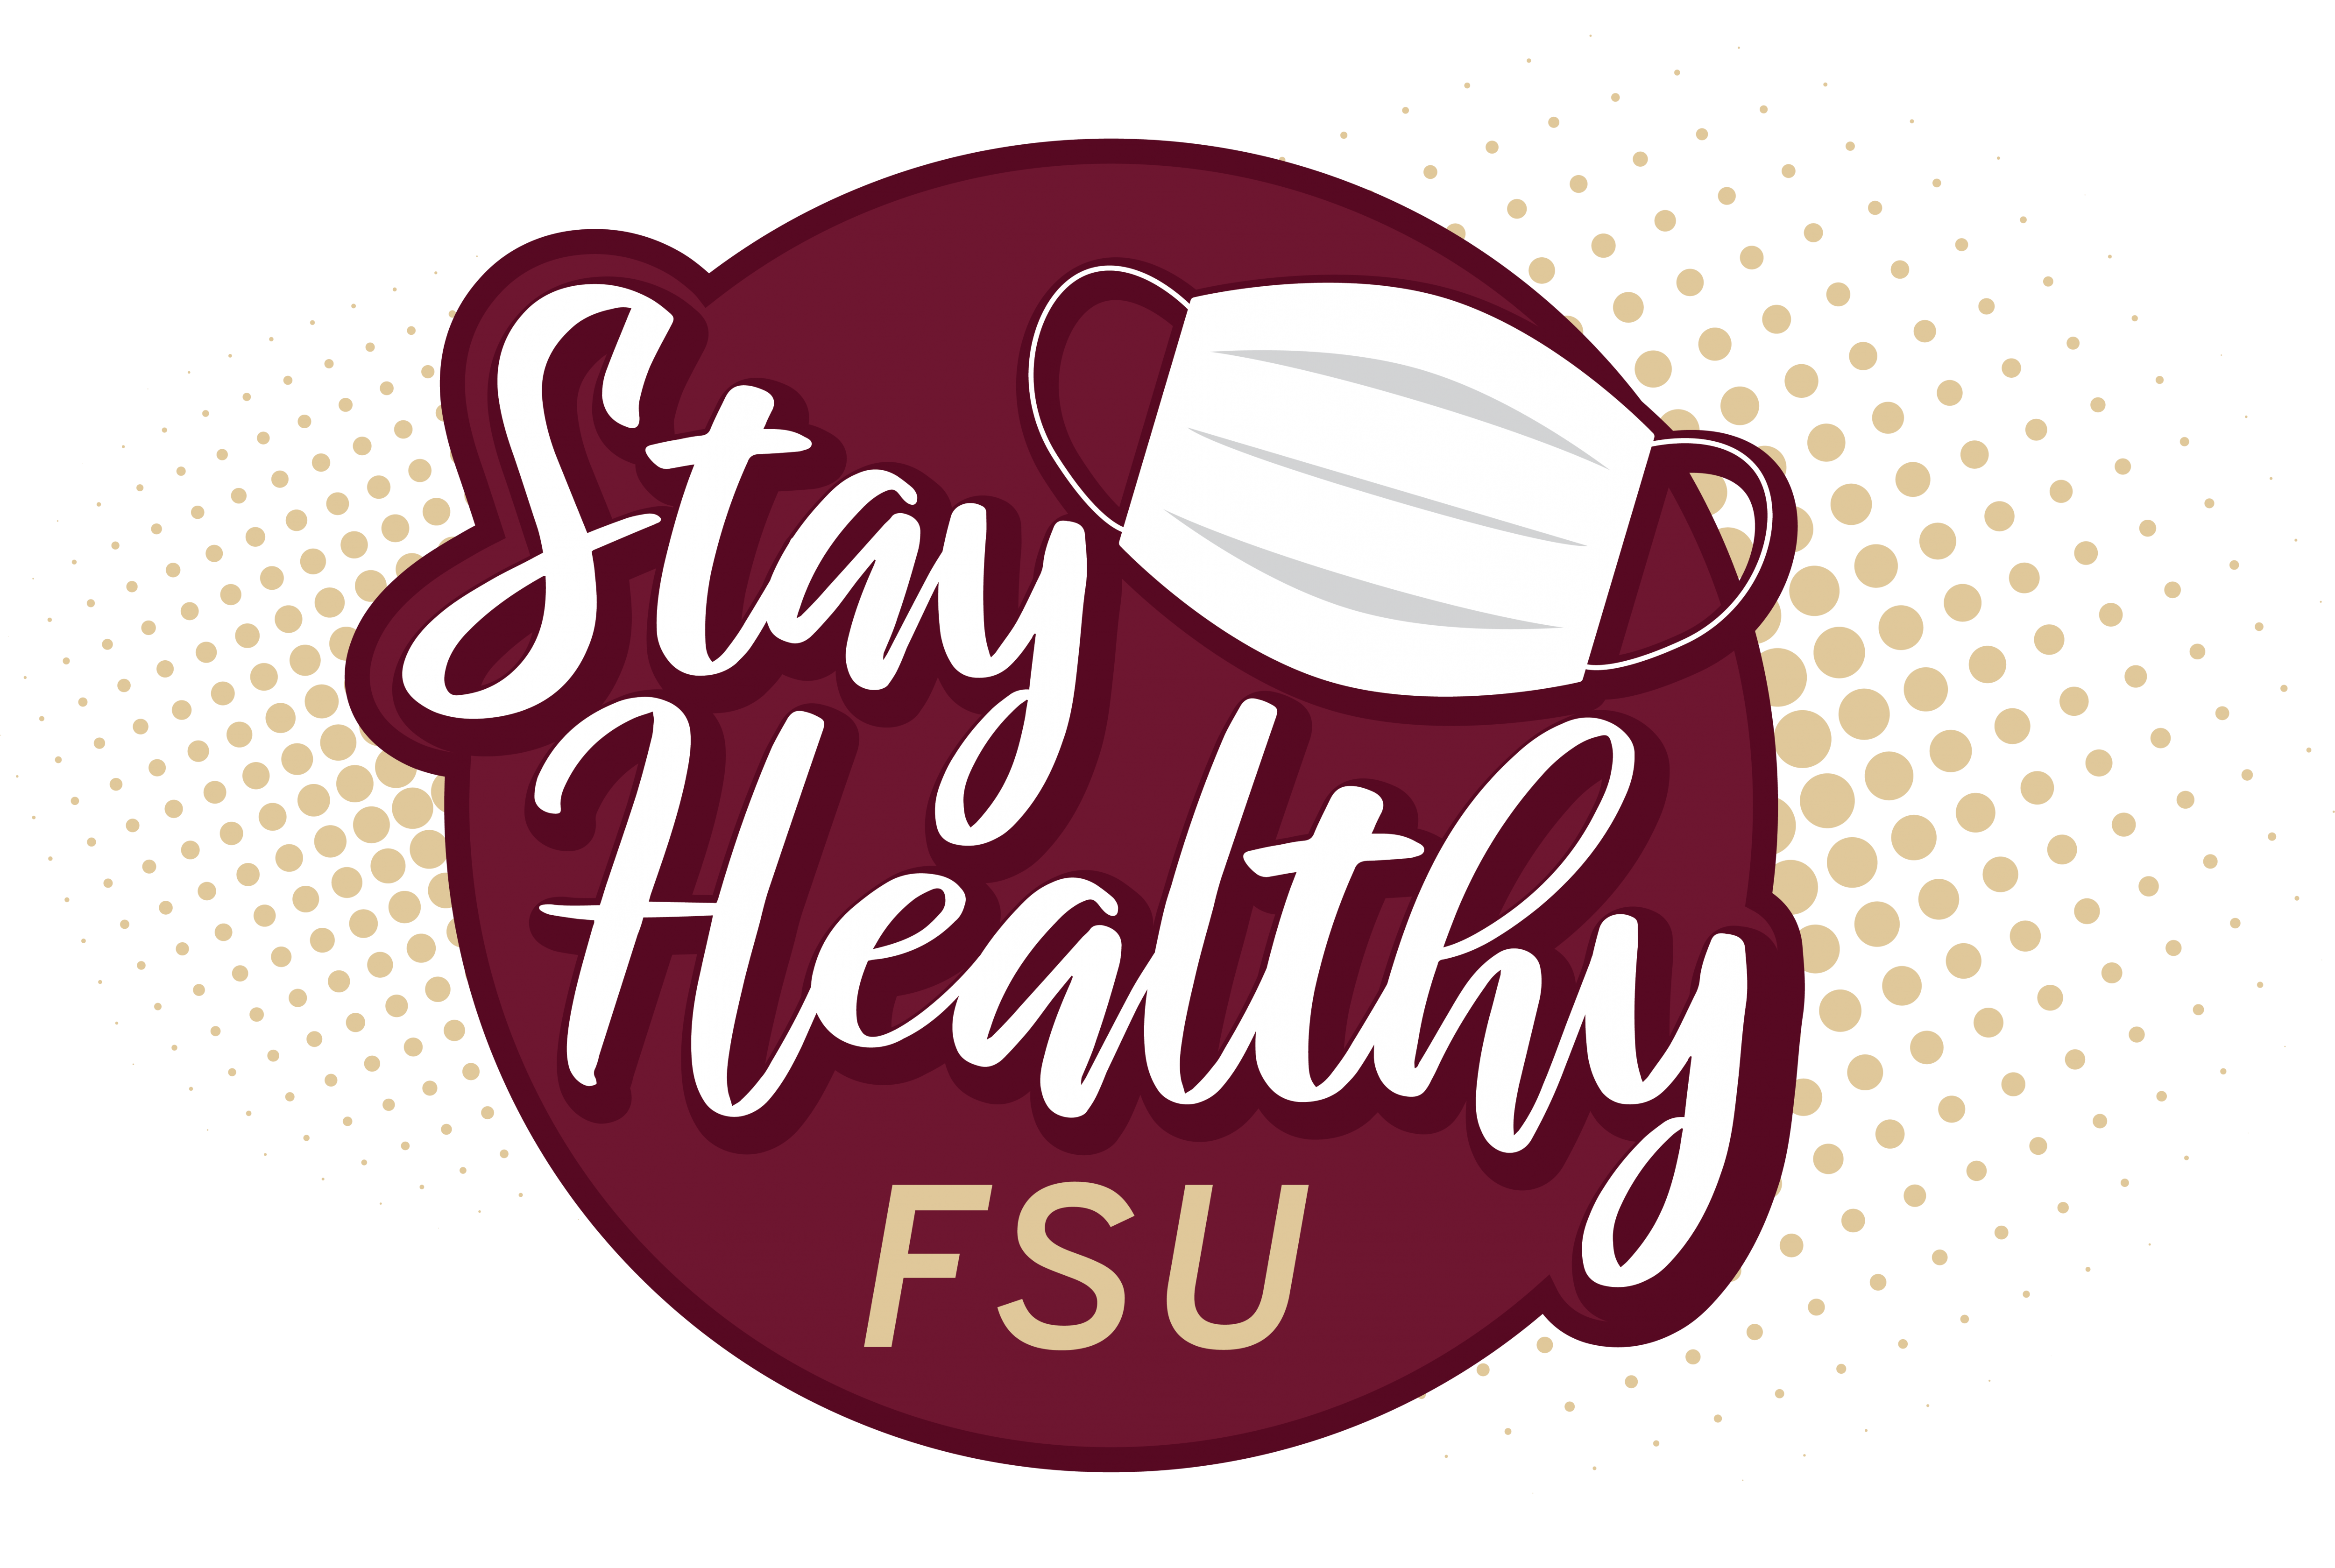 FSU Stay Healthy